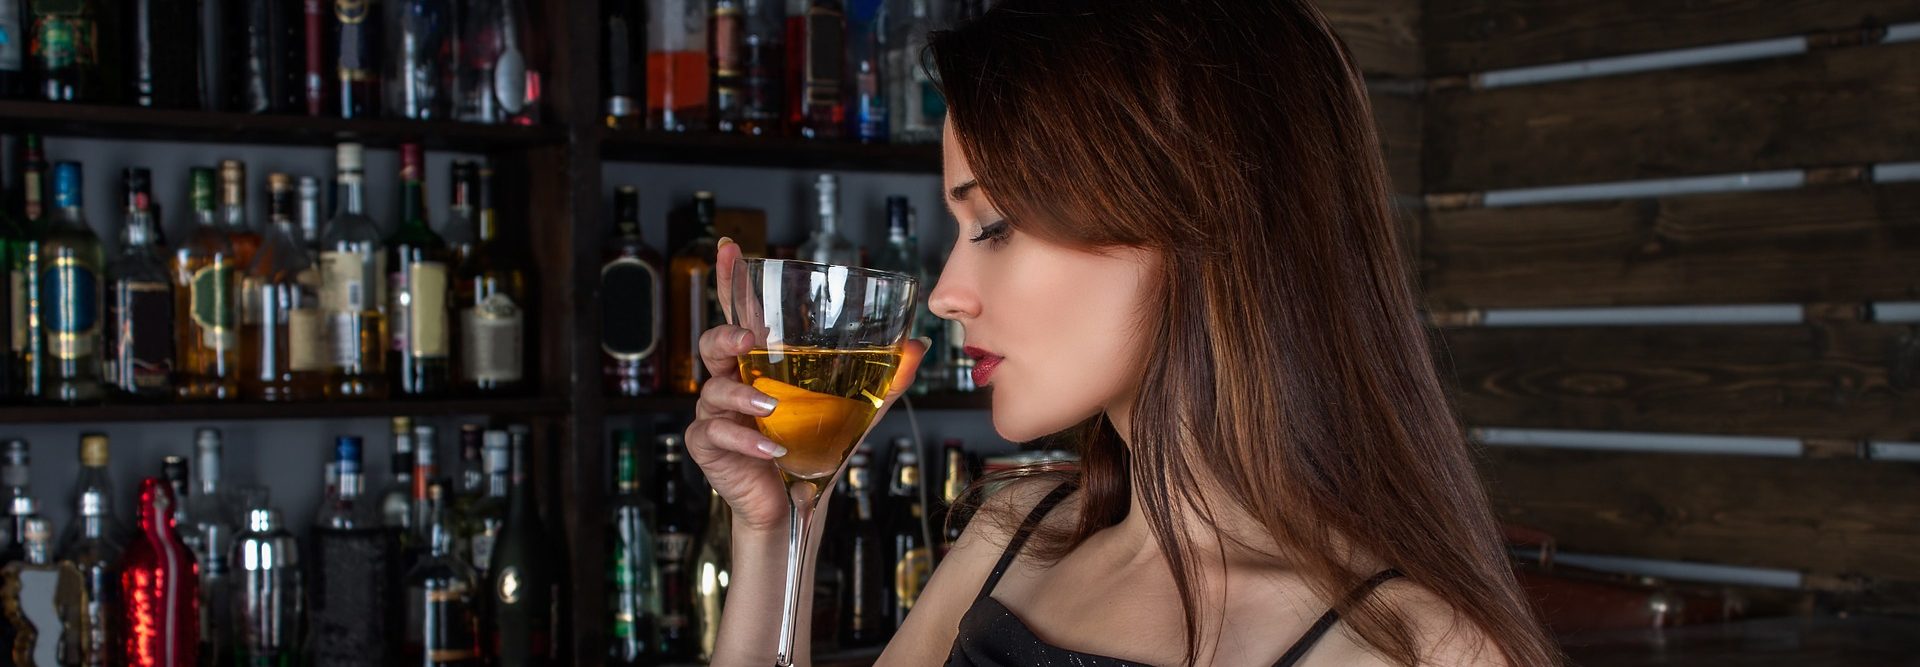 Вред алкоголя и его влияние на организм человека